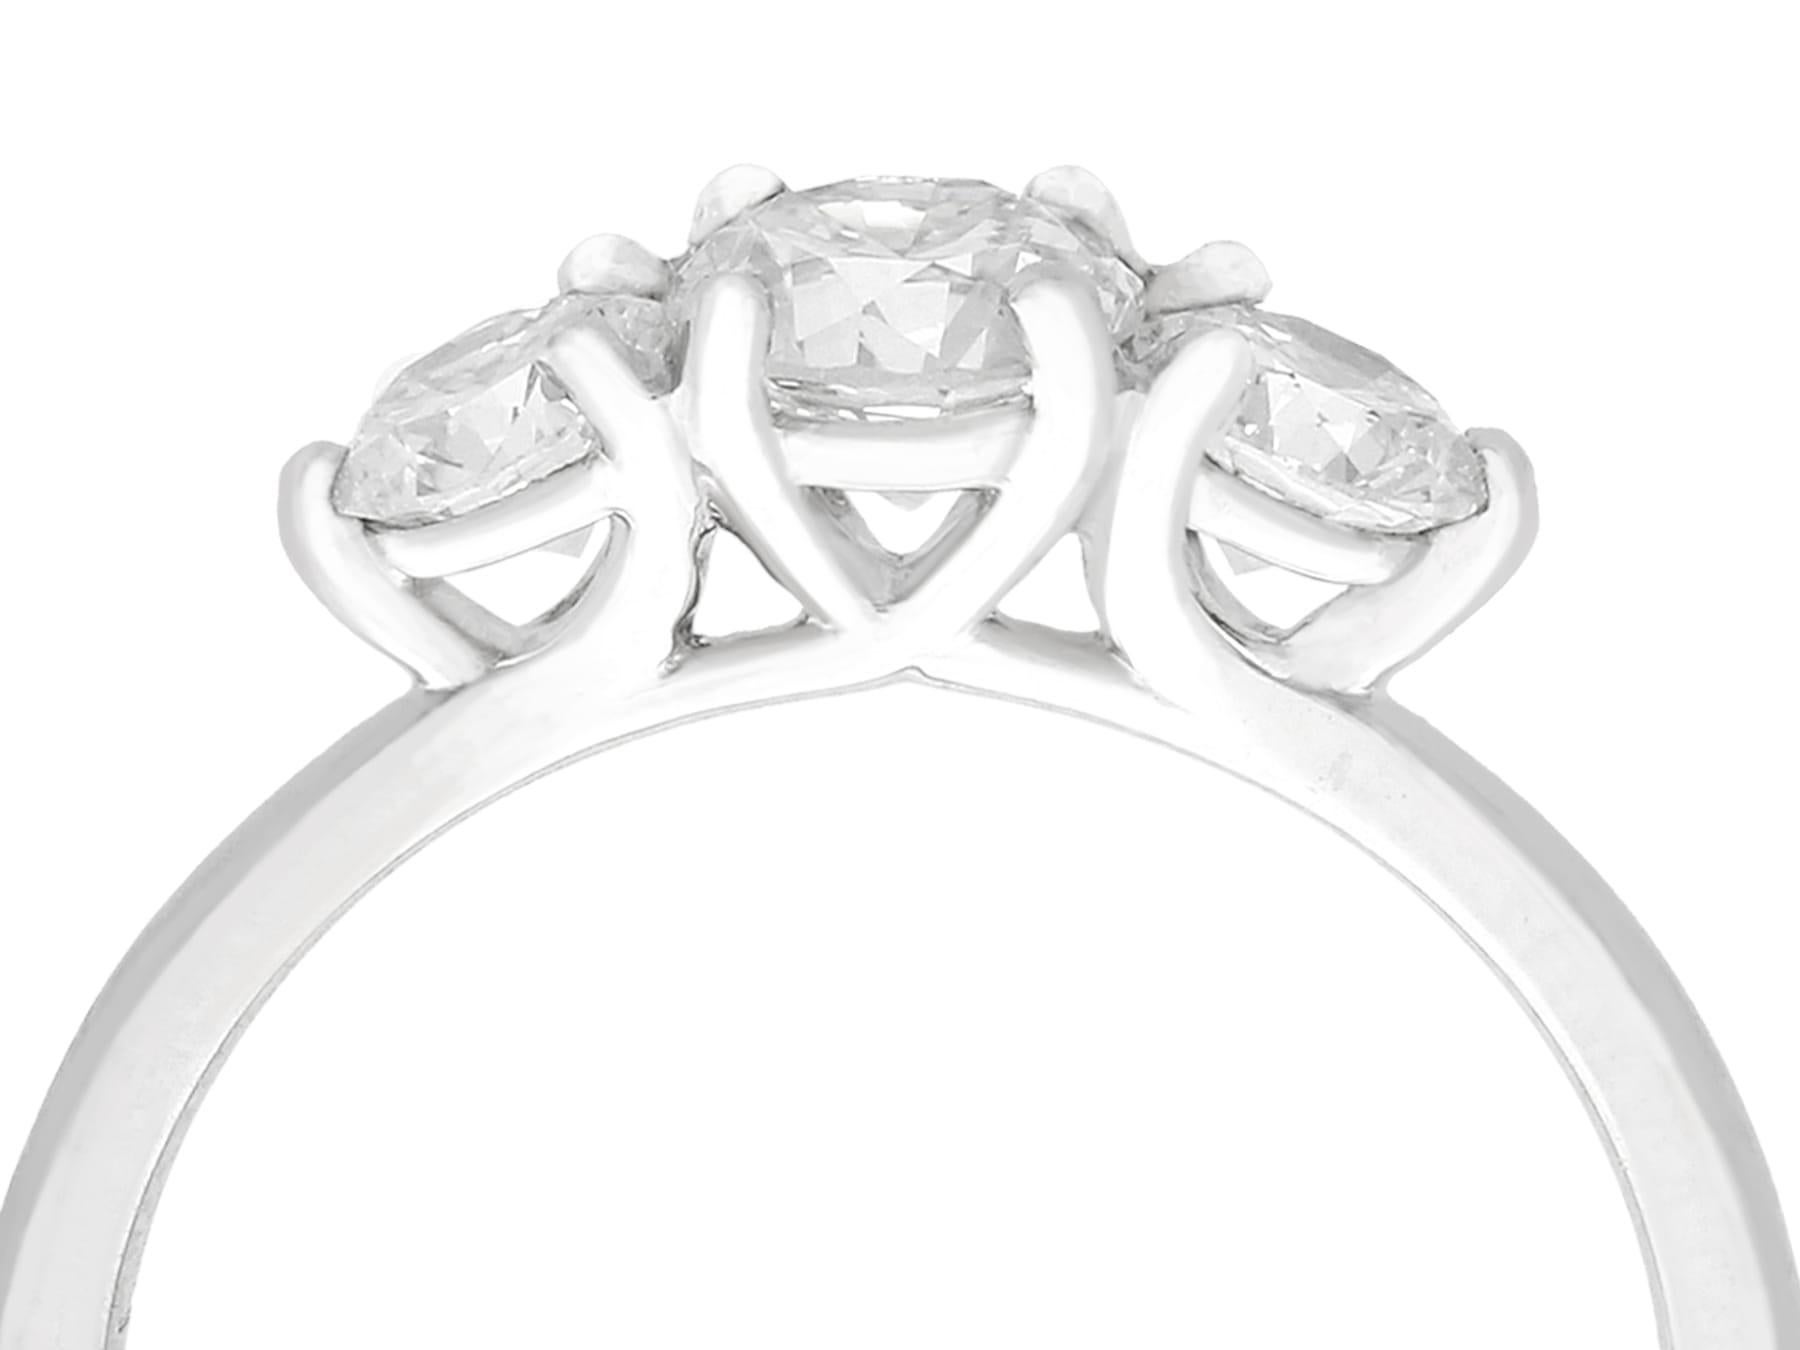 Eine feine und beeindruckende 1,14 Karat Diamant und Platin drei Stein Kleid Ring; Teil unserer vielfältigen antiken Schmuck und Nachlass Schmuck Sammlungen.

Dieser feine und beeindruckende Diamant-Trilogie-Ring ist aus Platin gefertigt.

Die